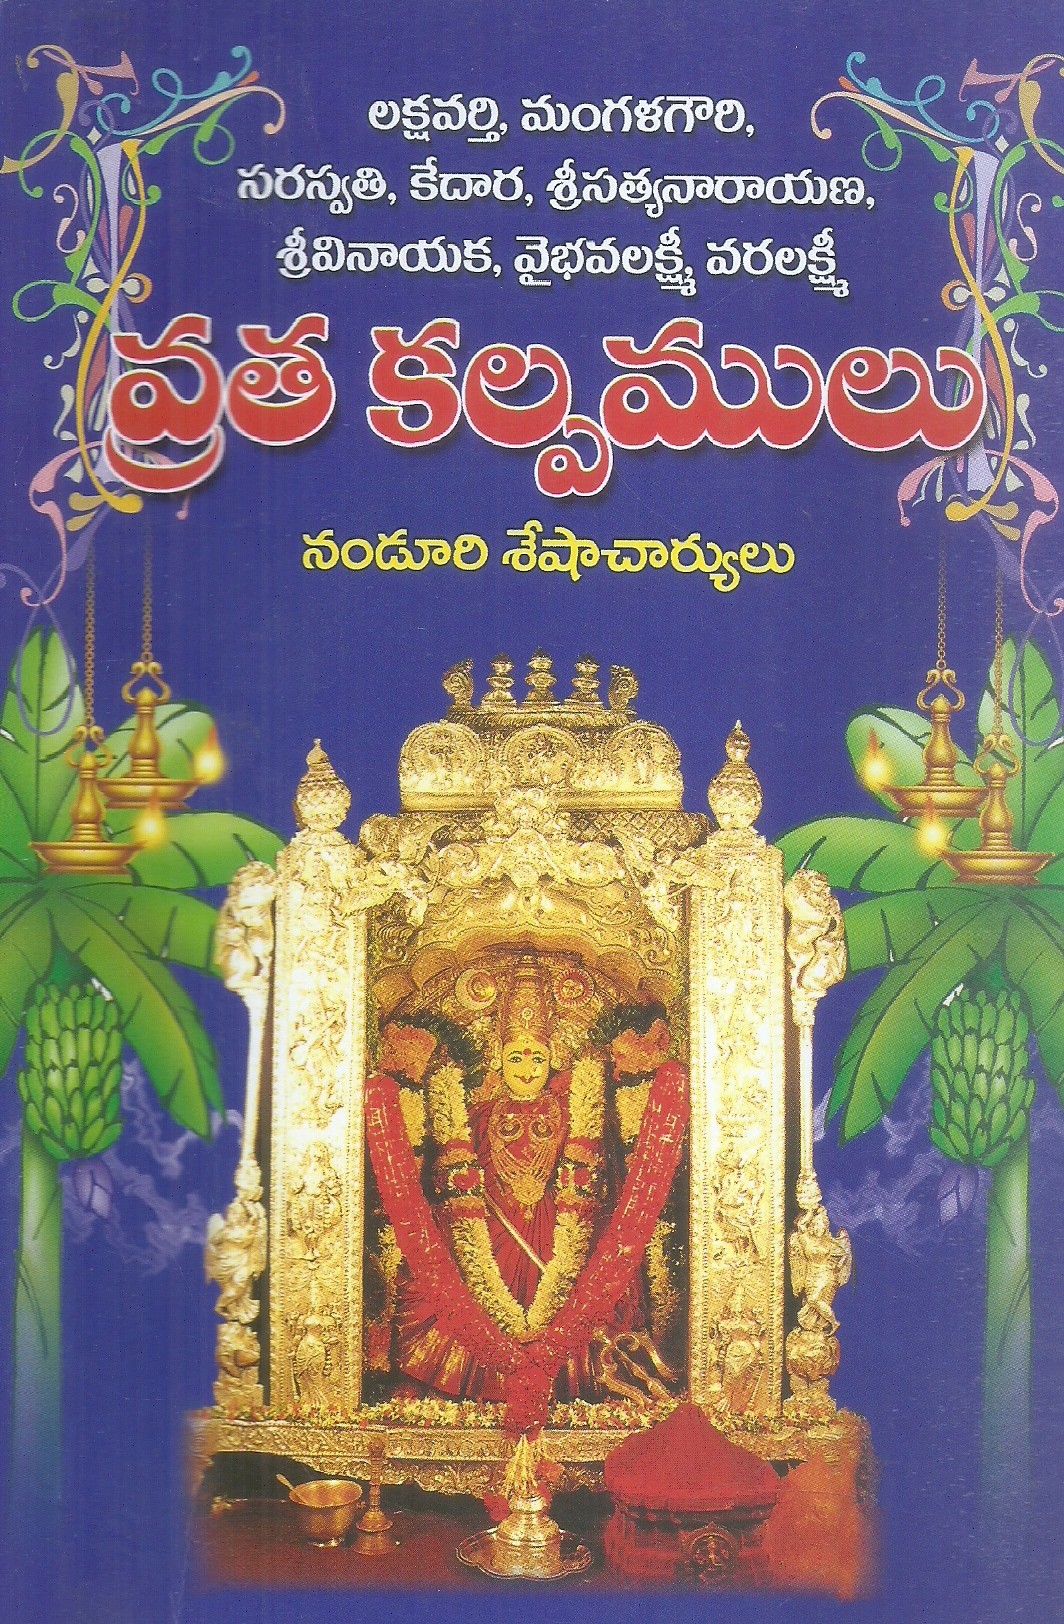 lakshmivarthi-mangalagouri-sarasvathi-kedara-sri-satyanarayana-sri-vinayaka-vaibhavalakshmi-varalakshmi-vratha-kalpamulu-nanduri-sesha-charyulu